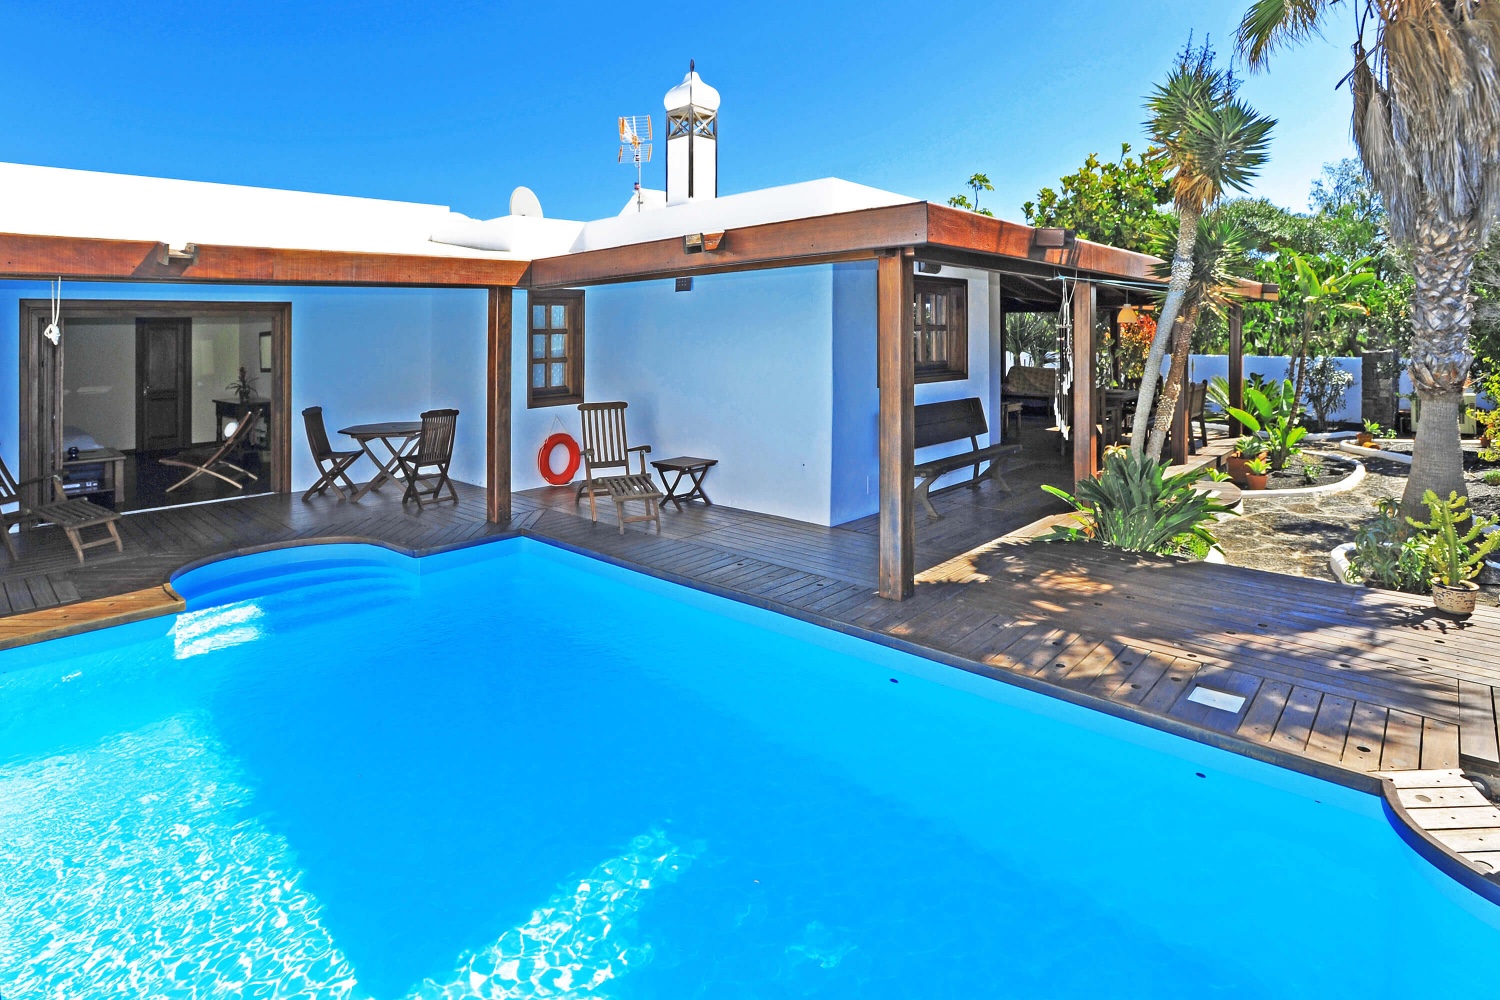 Kaunis rustiikkityylinen talo lomallesi Lanzarotessa, kauniilla puutarhalla ja yksityisellä uima-altaalla lähellä rantaa ja golfkenttää Costa Teguisessa